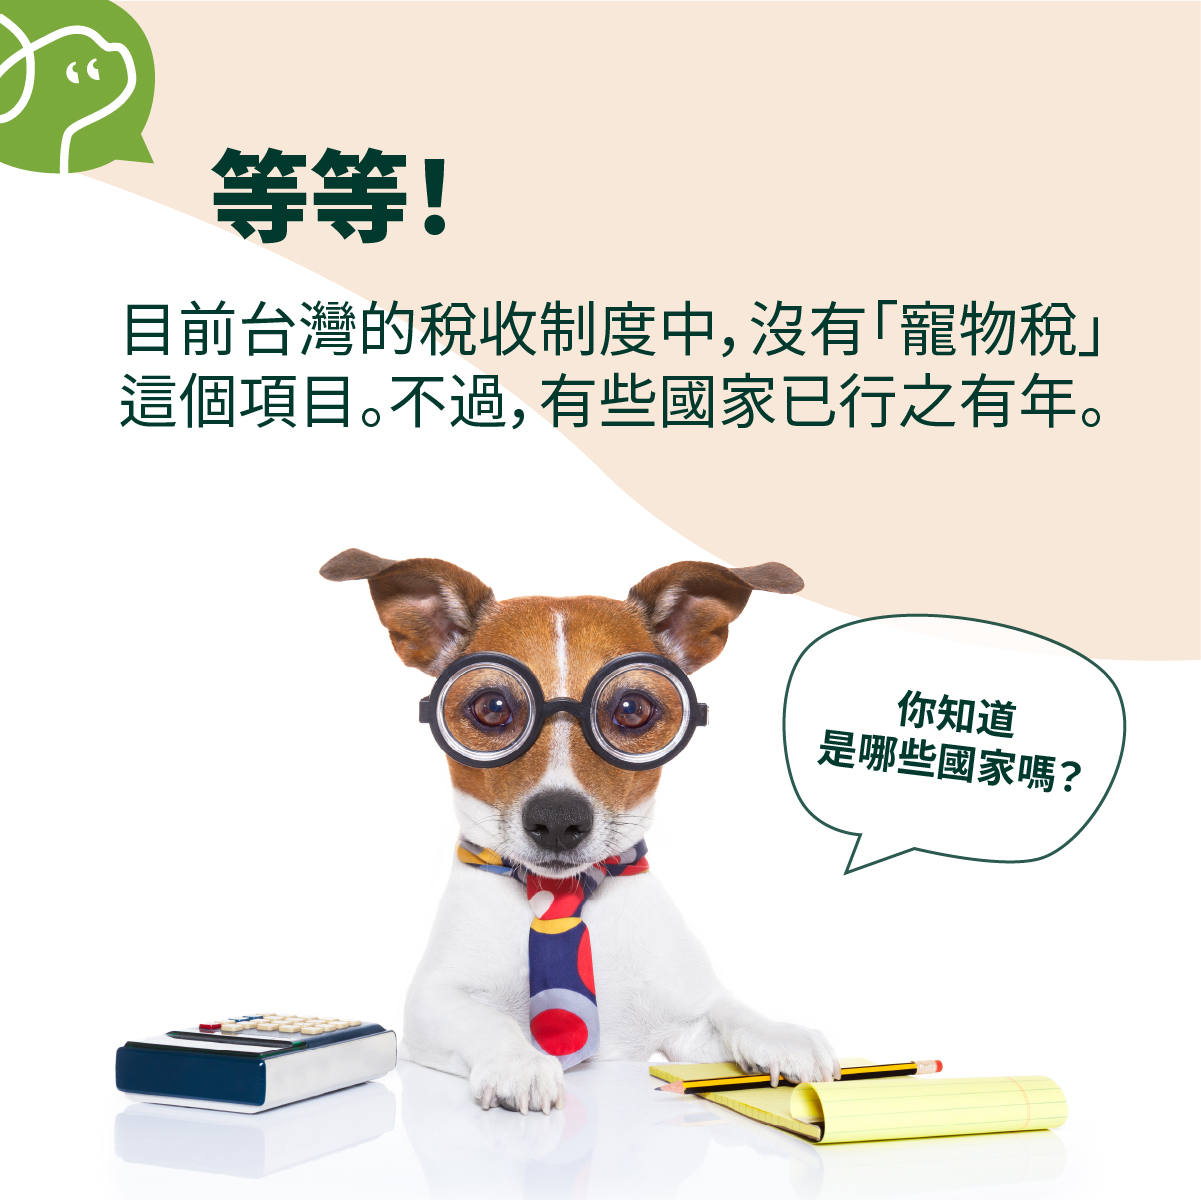 目前台灣的稅收制度中，沒有「寵物稅」
這個項目。不過，有些國家已行之有年。